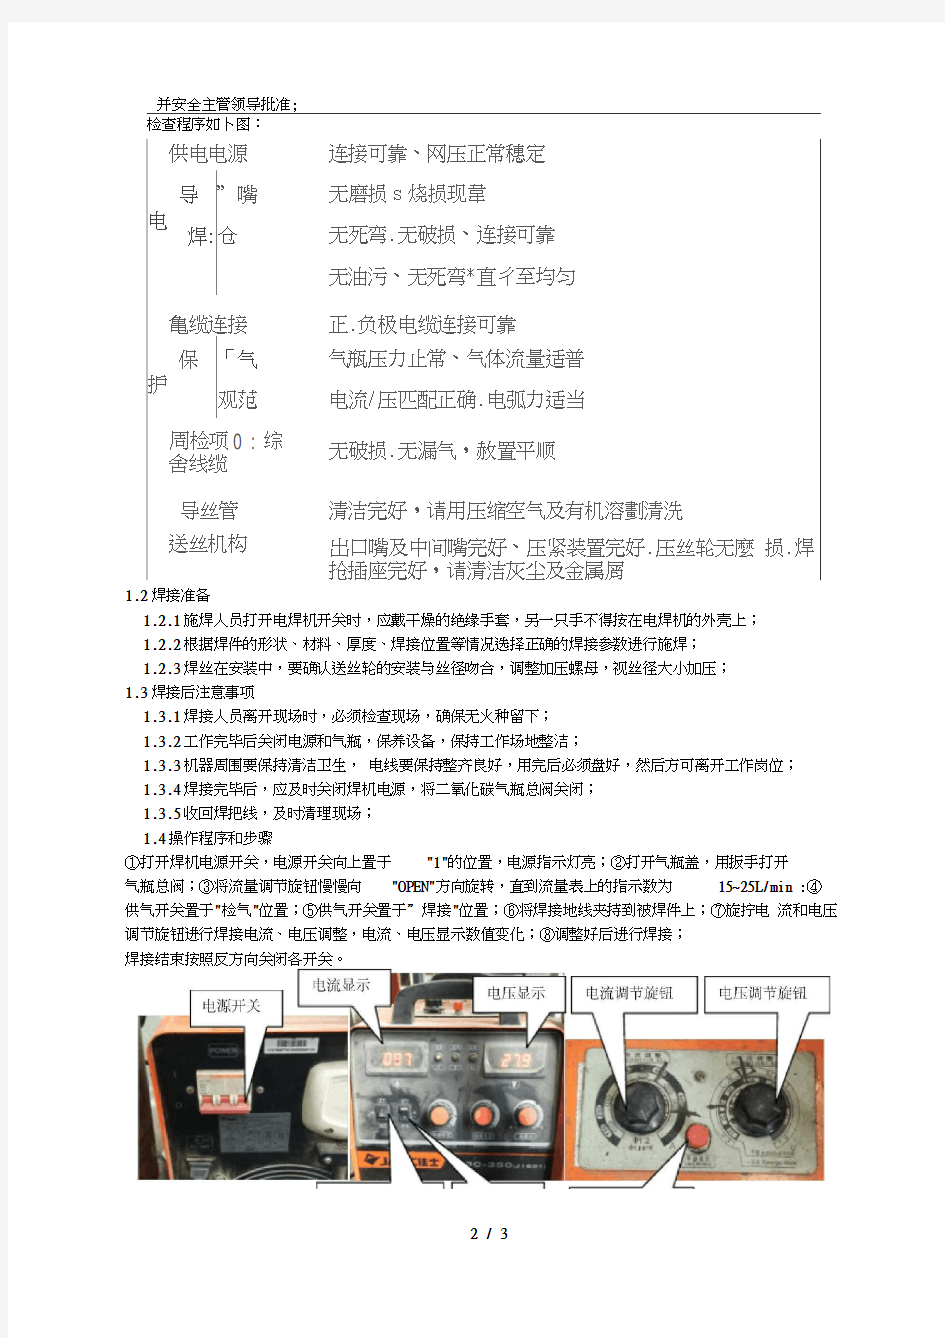 二保焊机安全操作说明1(20210131064622)